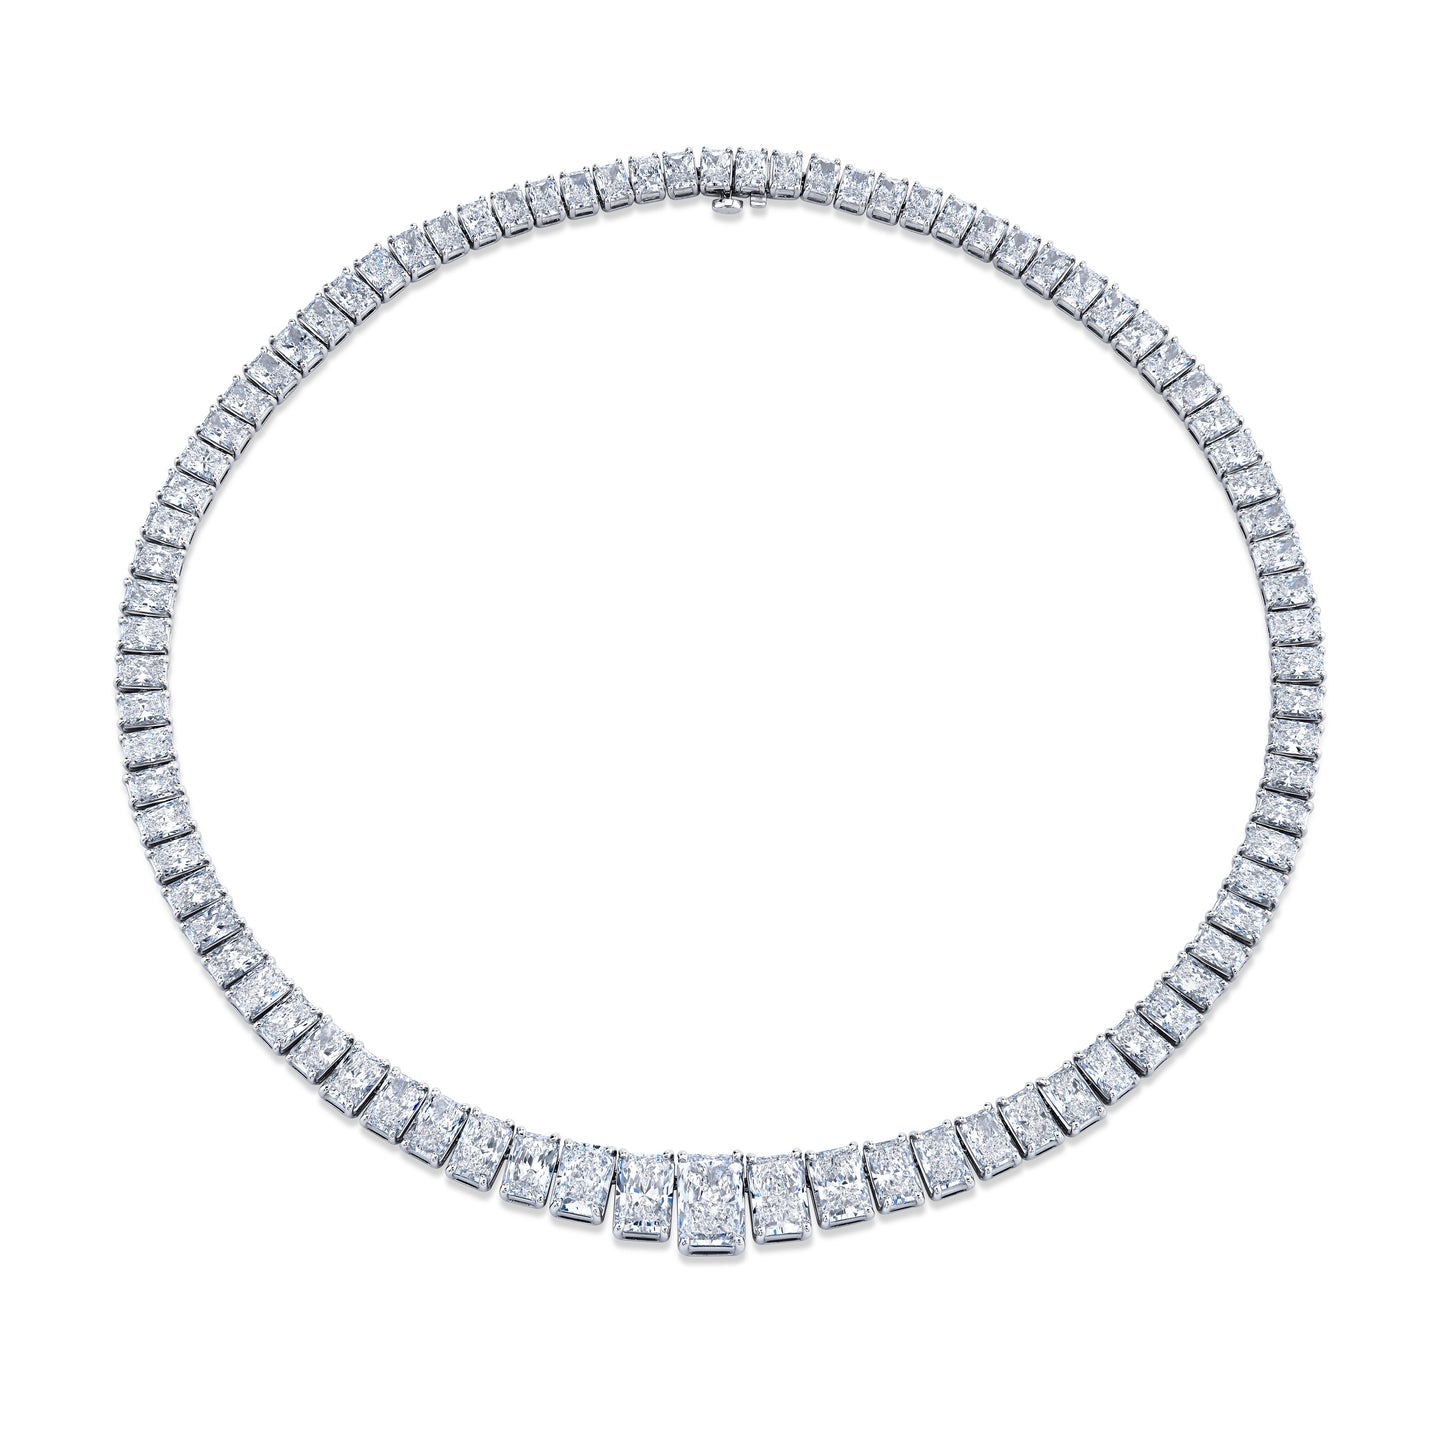 48.59 Carat Graduated Riviera Radiant Cut Diamond Necklace